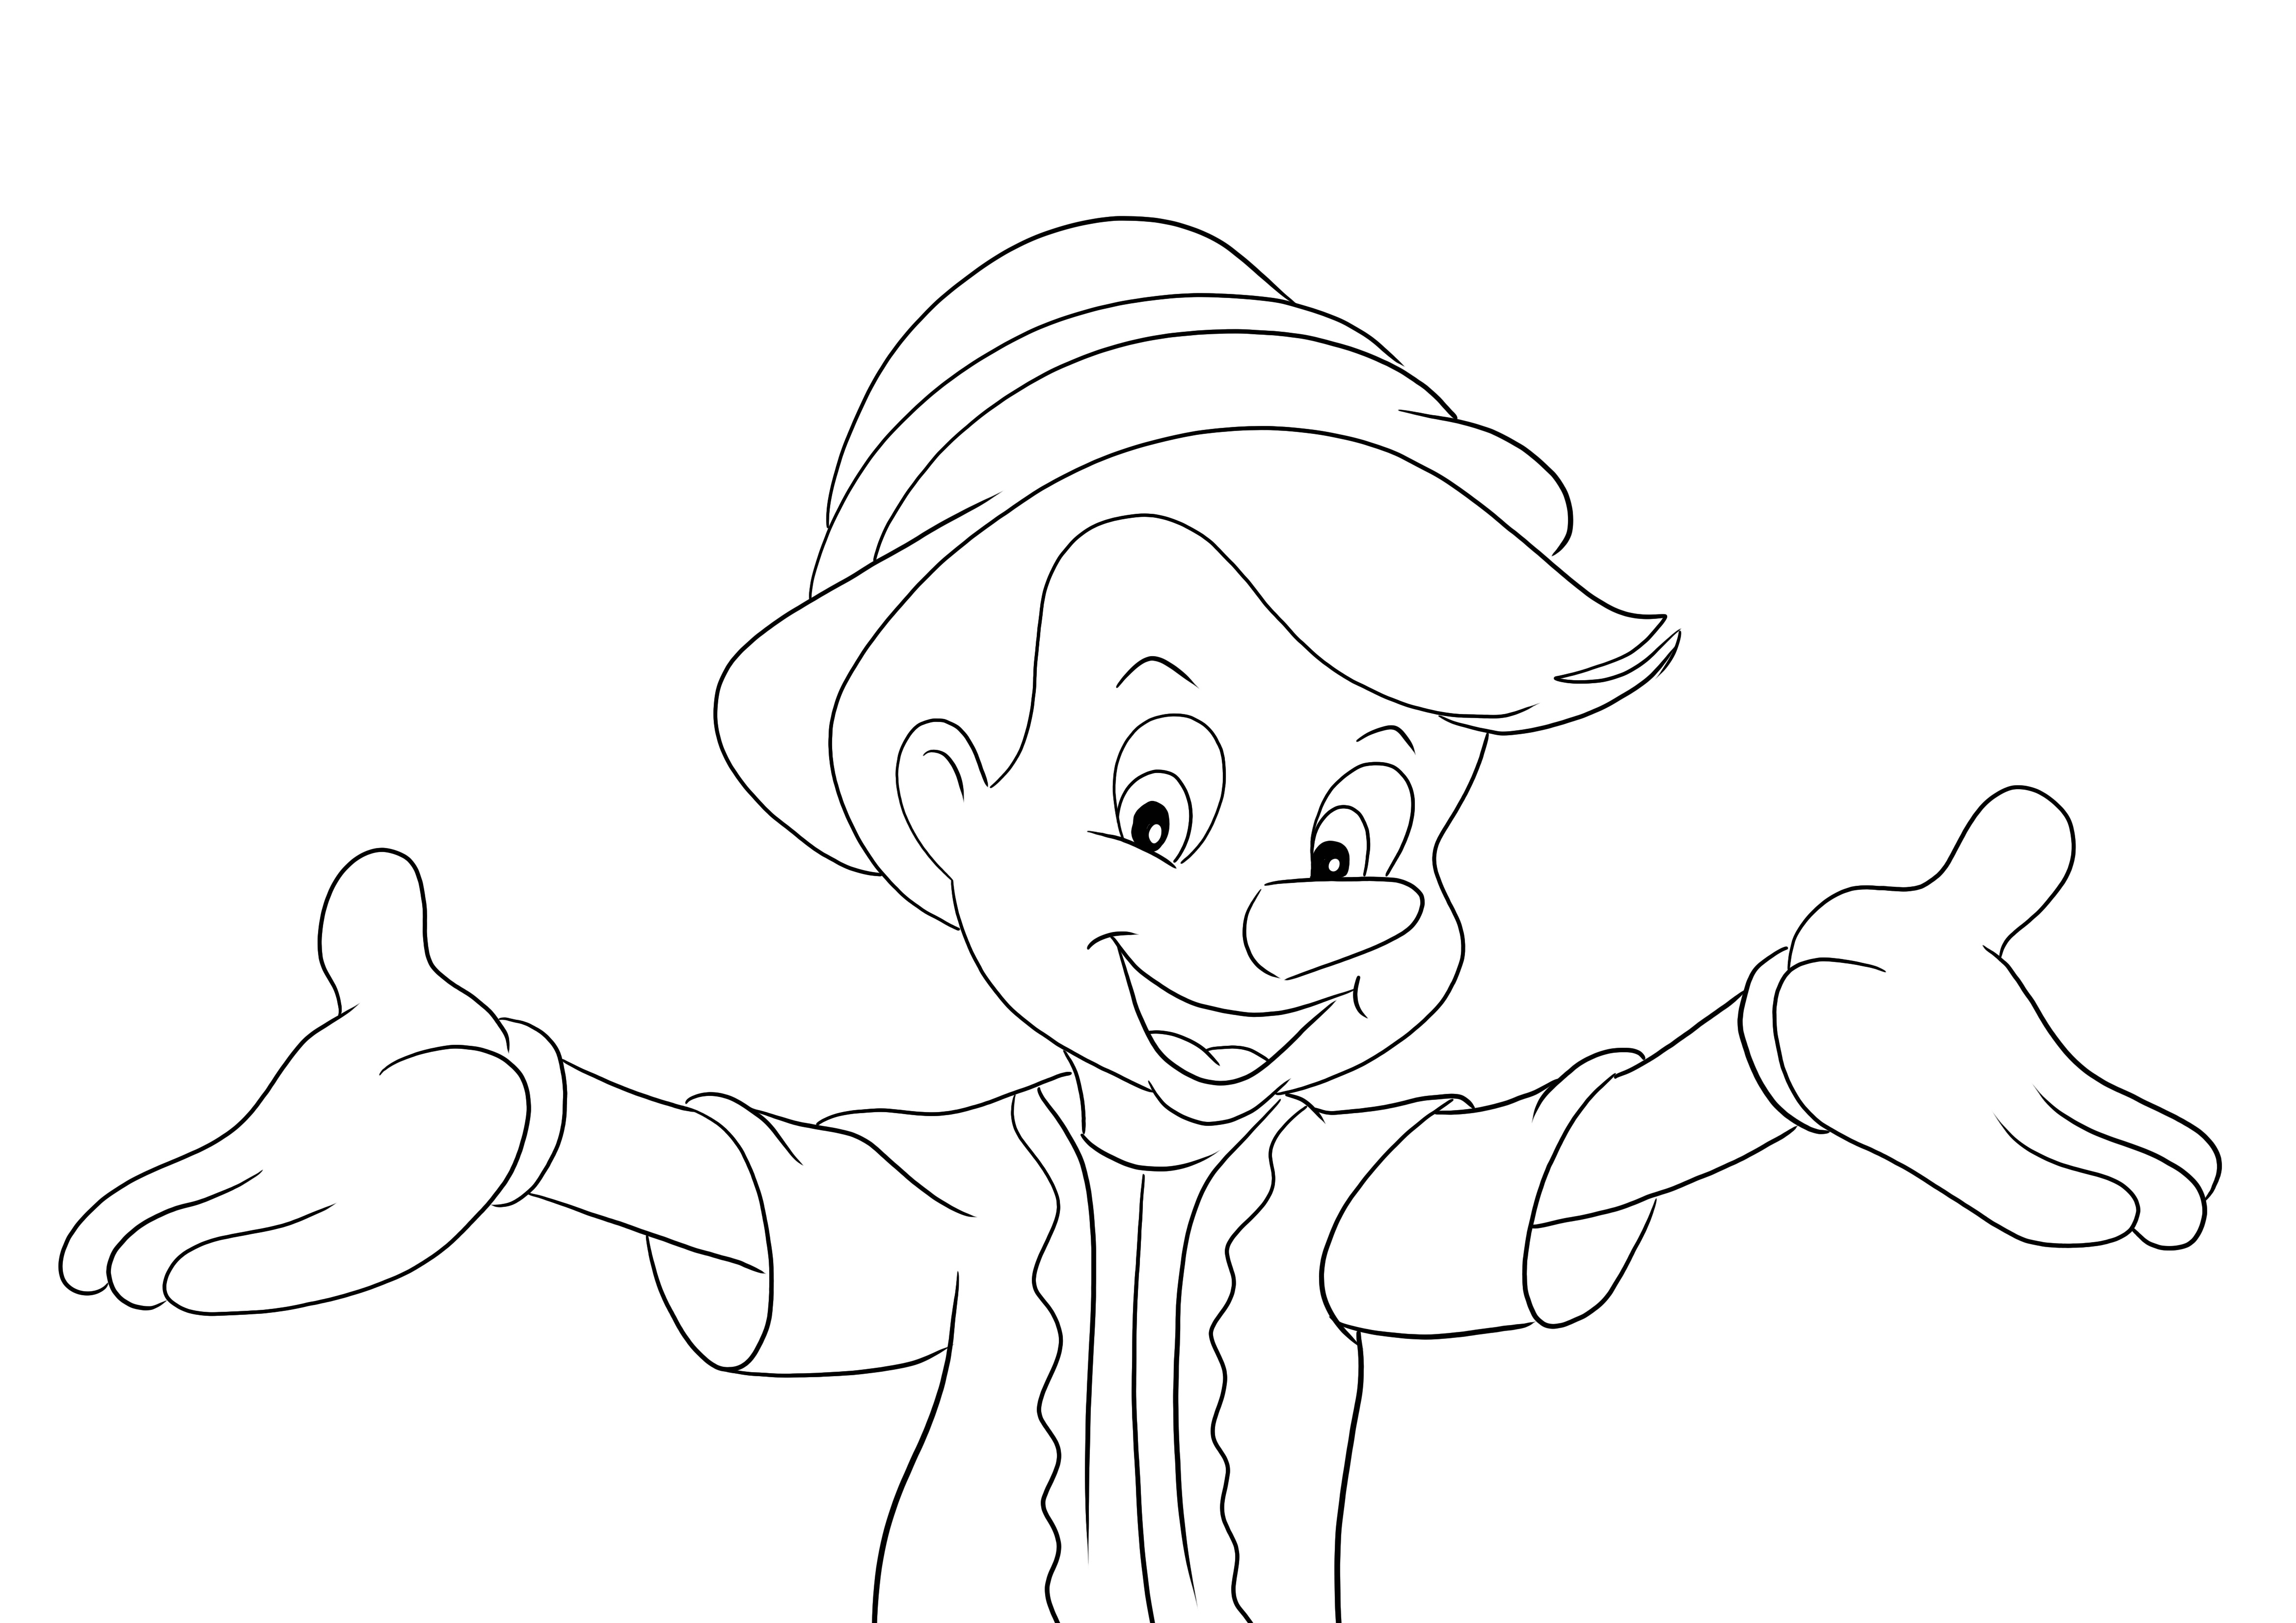 Pinocchio et image à imprimer et à colorier mains libres ouverte pour les enfants